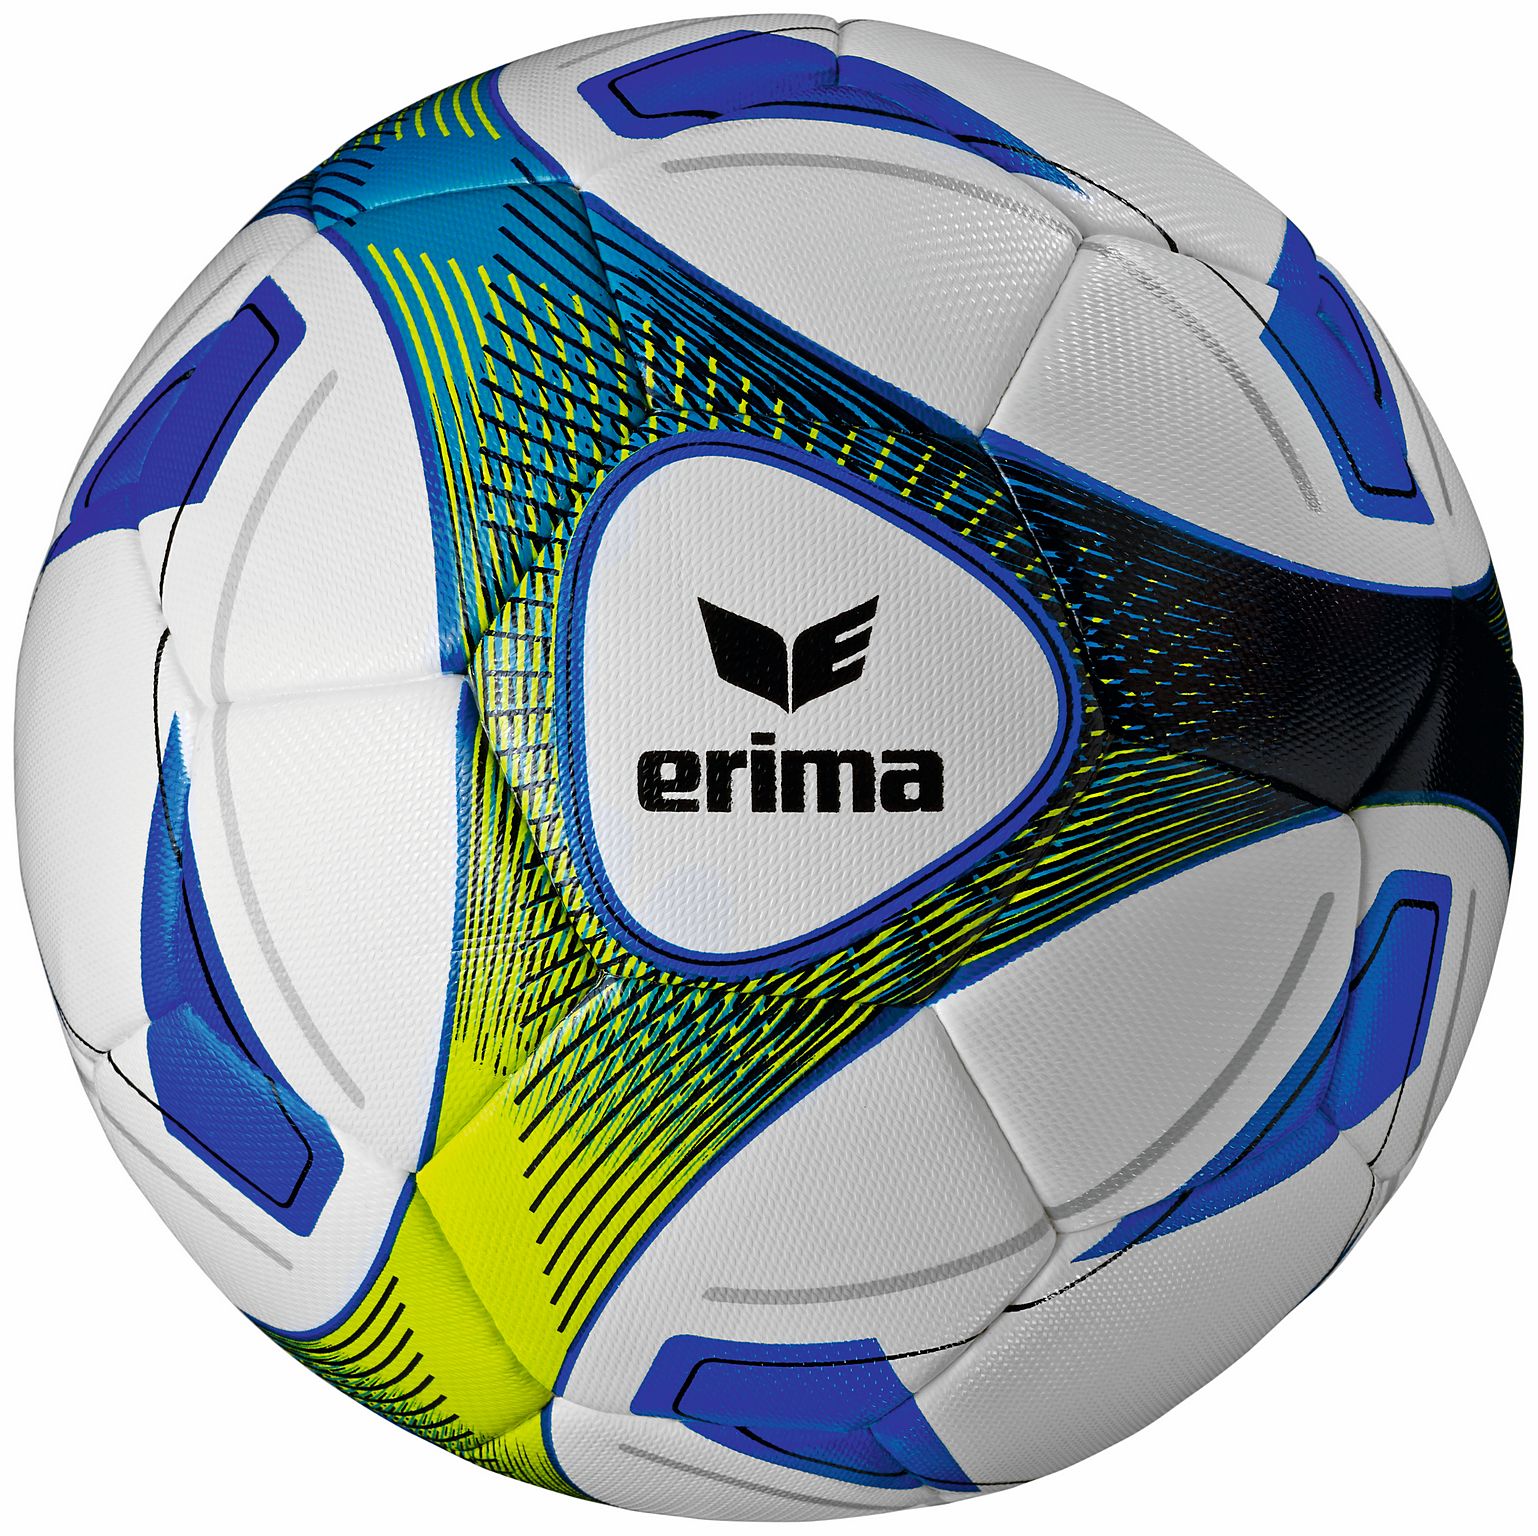 erima 719505 Hybrid Tainings Fussball bei sport-boecker.de